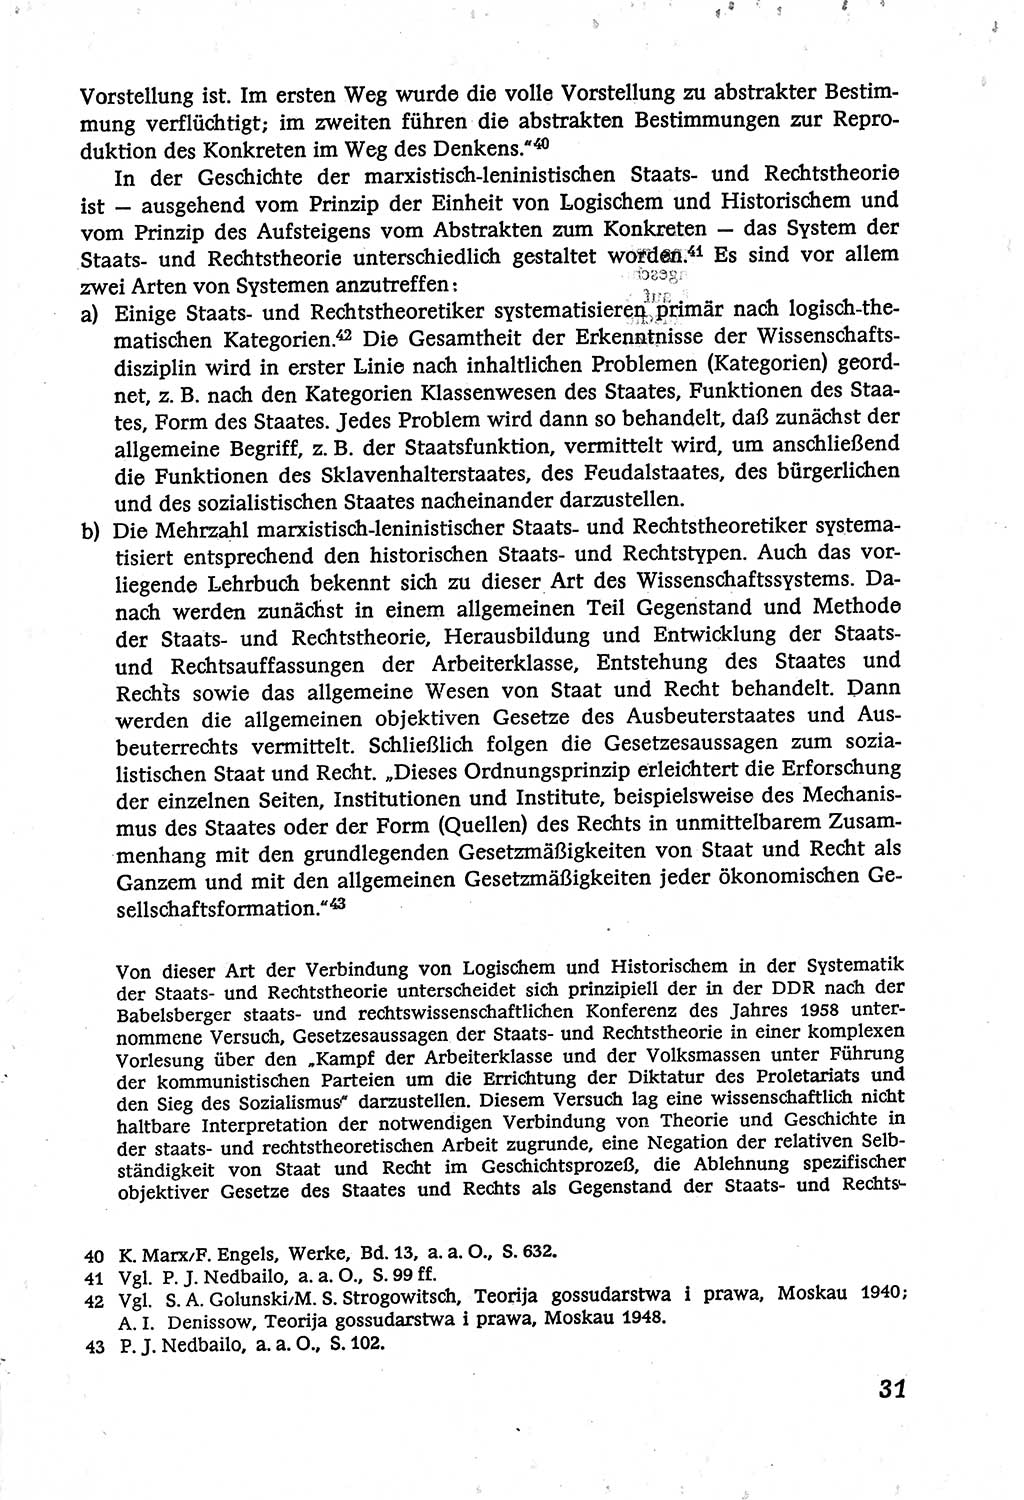 Marxistisch-leninistische (ML) Staats- und Rechtstheorie [Deutsche Demokratische Republik (DDR)], Lehrbuch 1980, Seite 31 (ML St.-R.-Th. DDR Lb. 1980, S. 31)